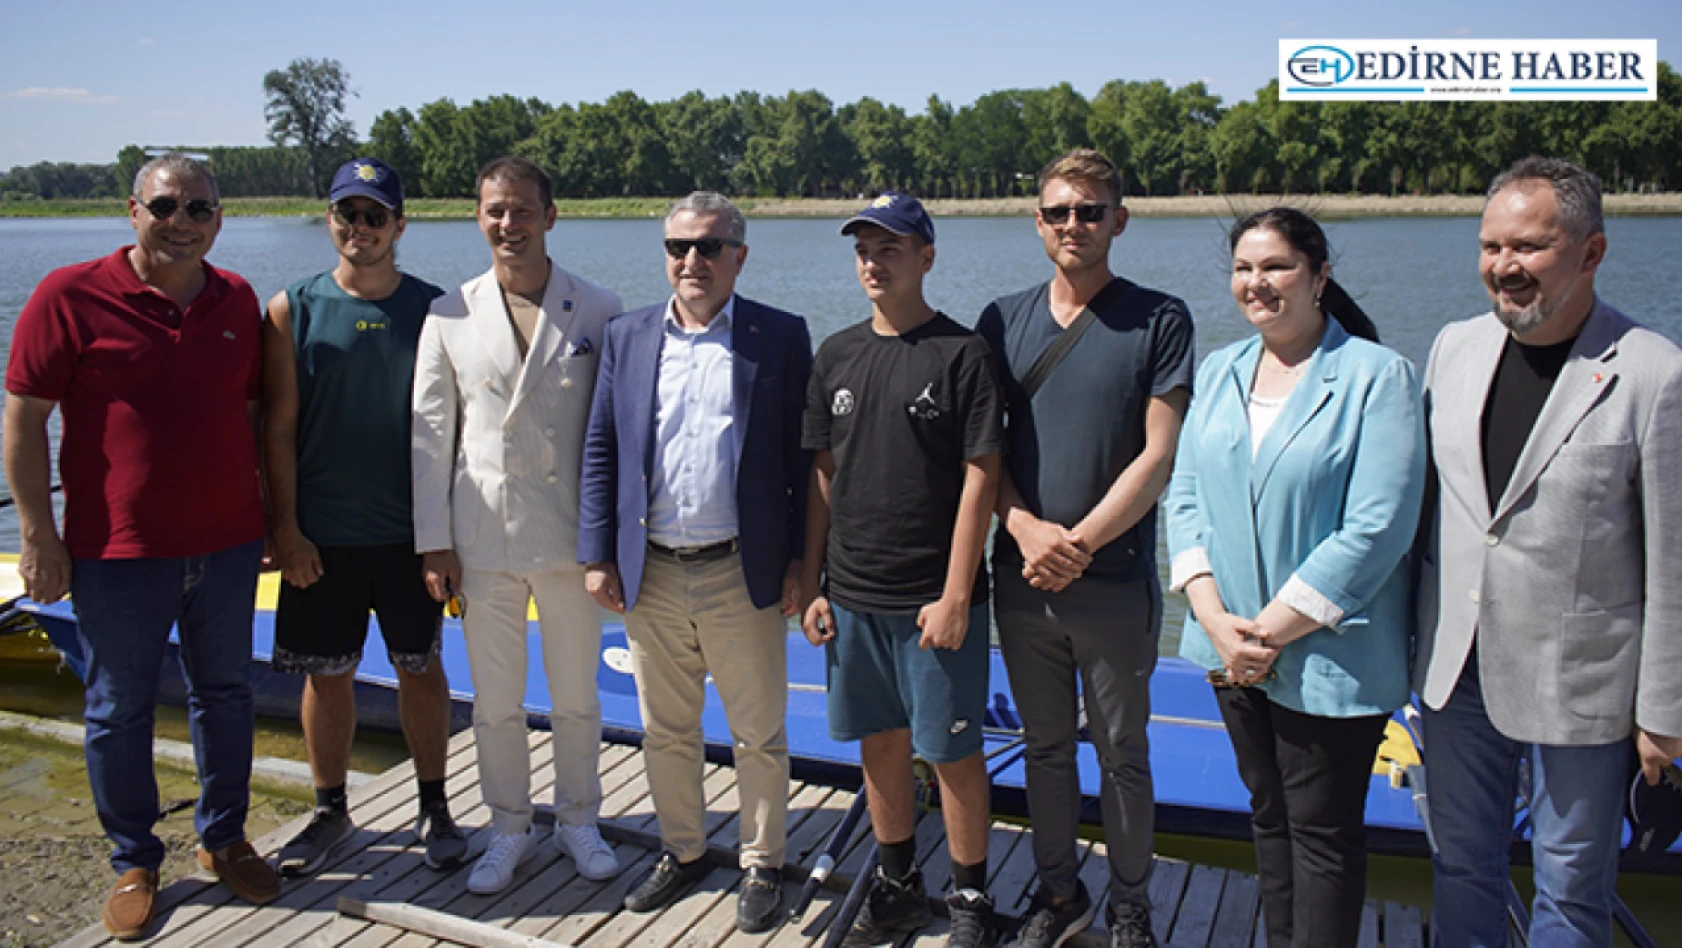 Edirne'yi su sporlarının merkezi haline getirecek projeye spor bakanından onay çıktı